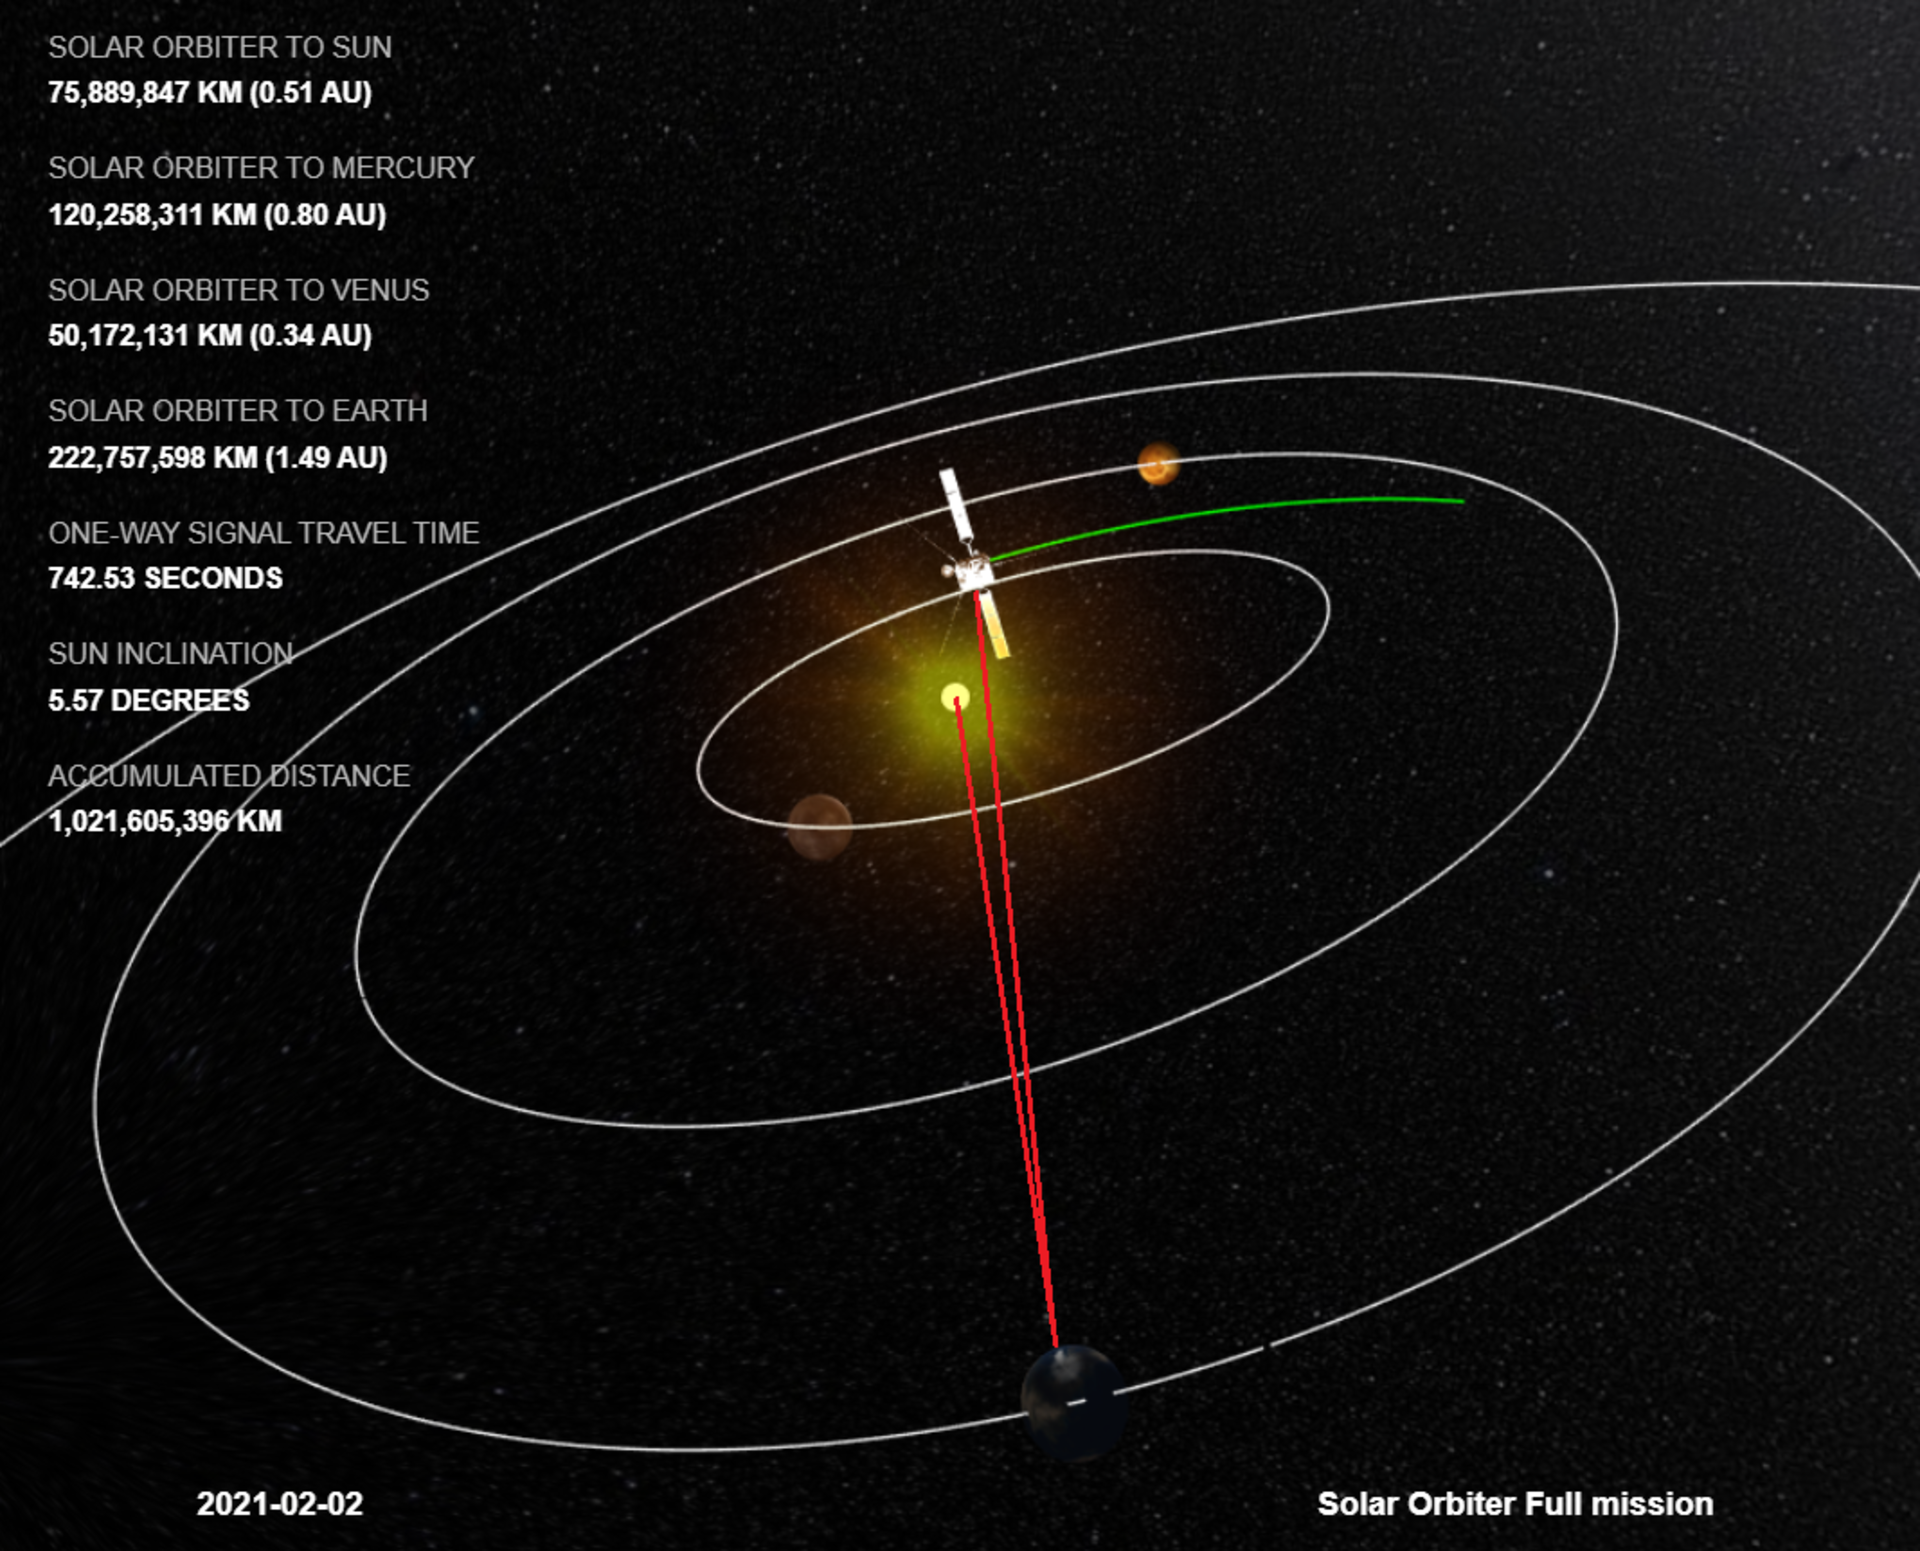 Solar Orbiter arcs behind the Sun as seen from Earth